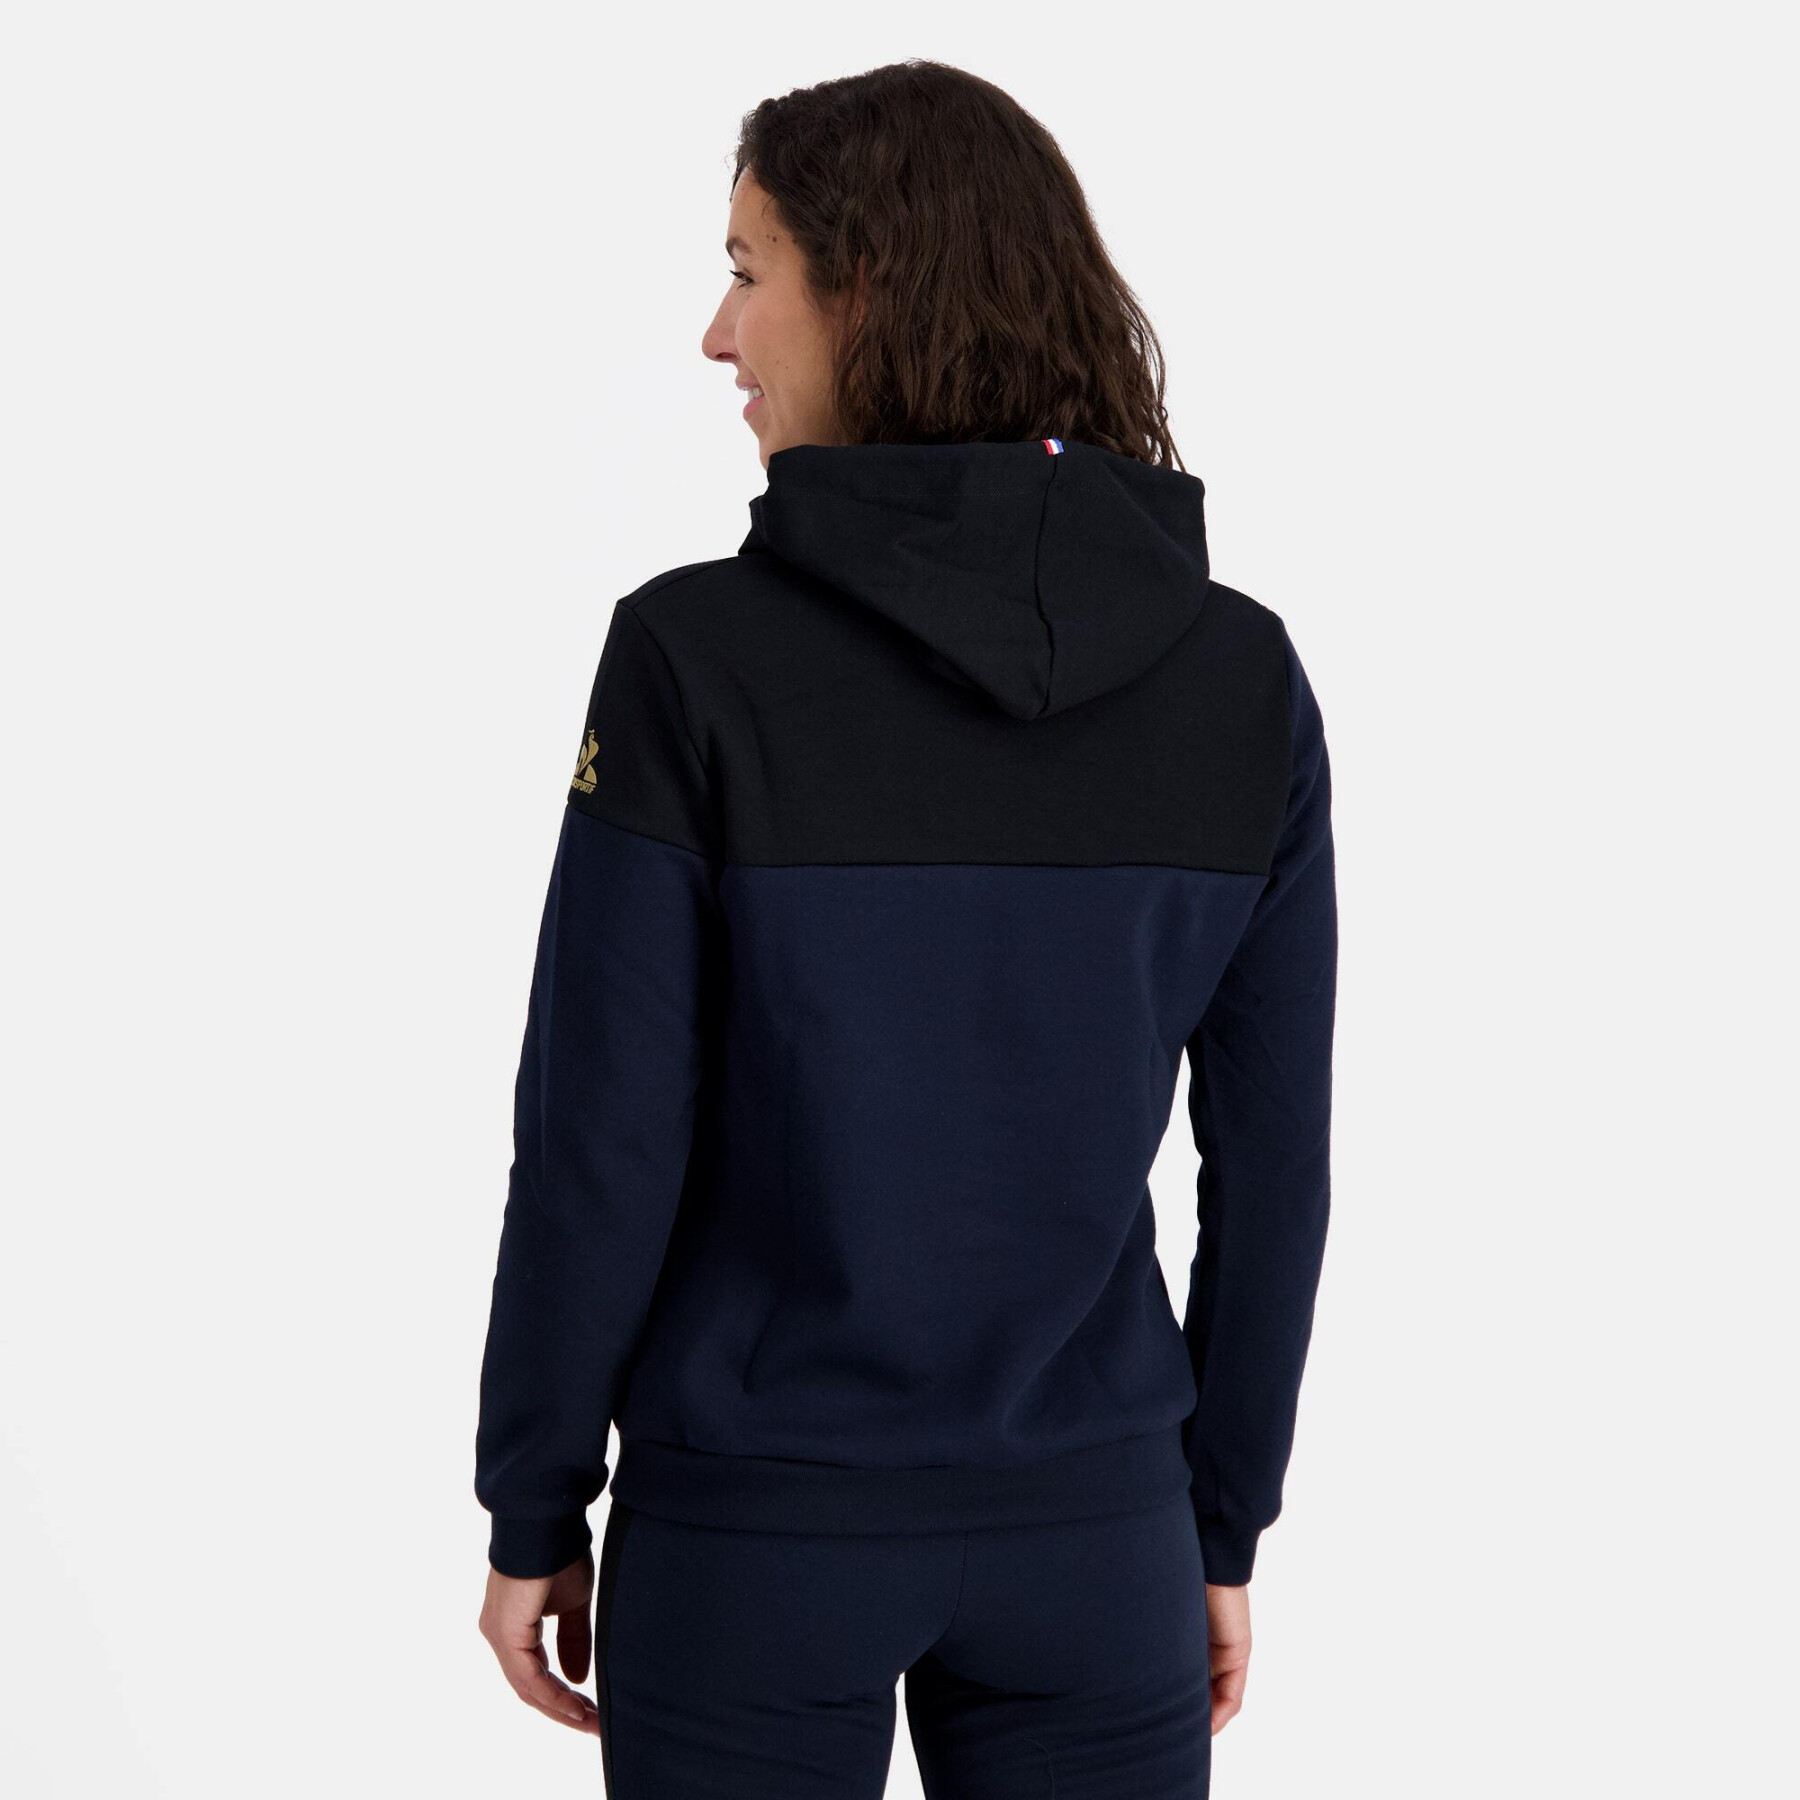 Women's hooded sweatshirt Le Coq Sportif Noël Sp N°1